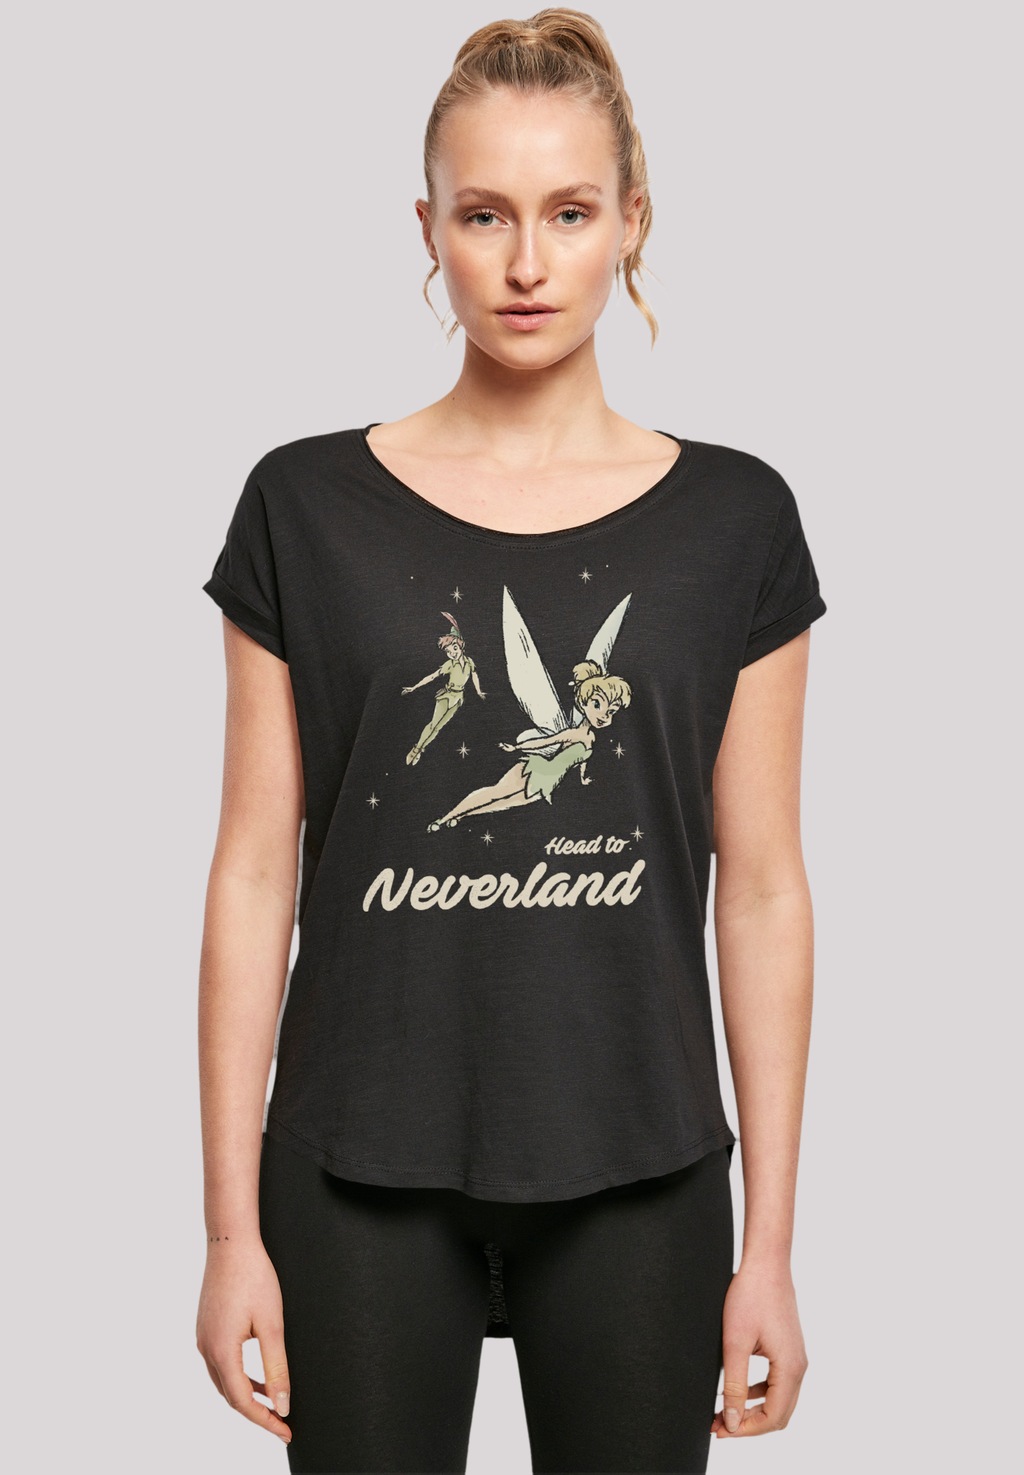 F4NT4STIC T-Shirt "Disney Peter Pan Head To Neverland", Premium Qualität günstig online kaufen